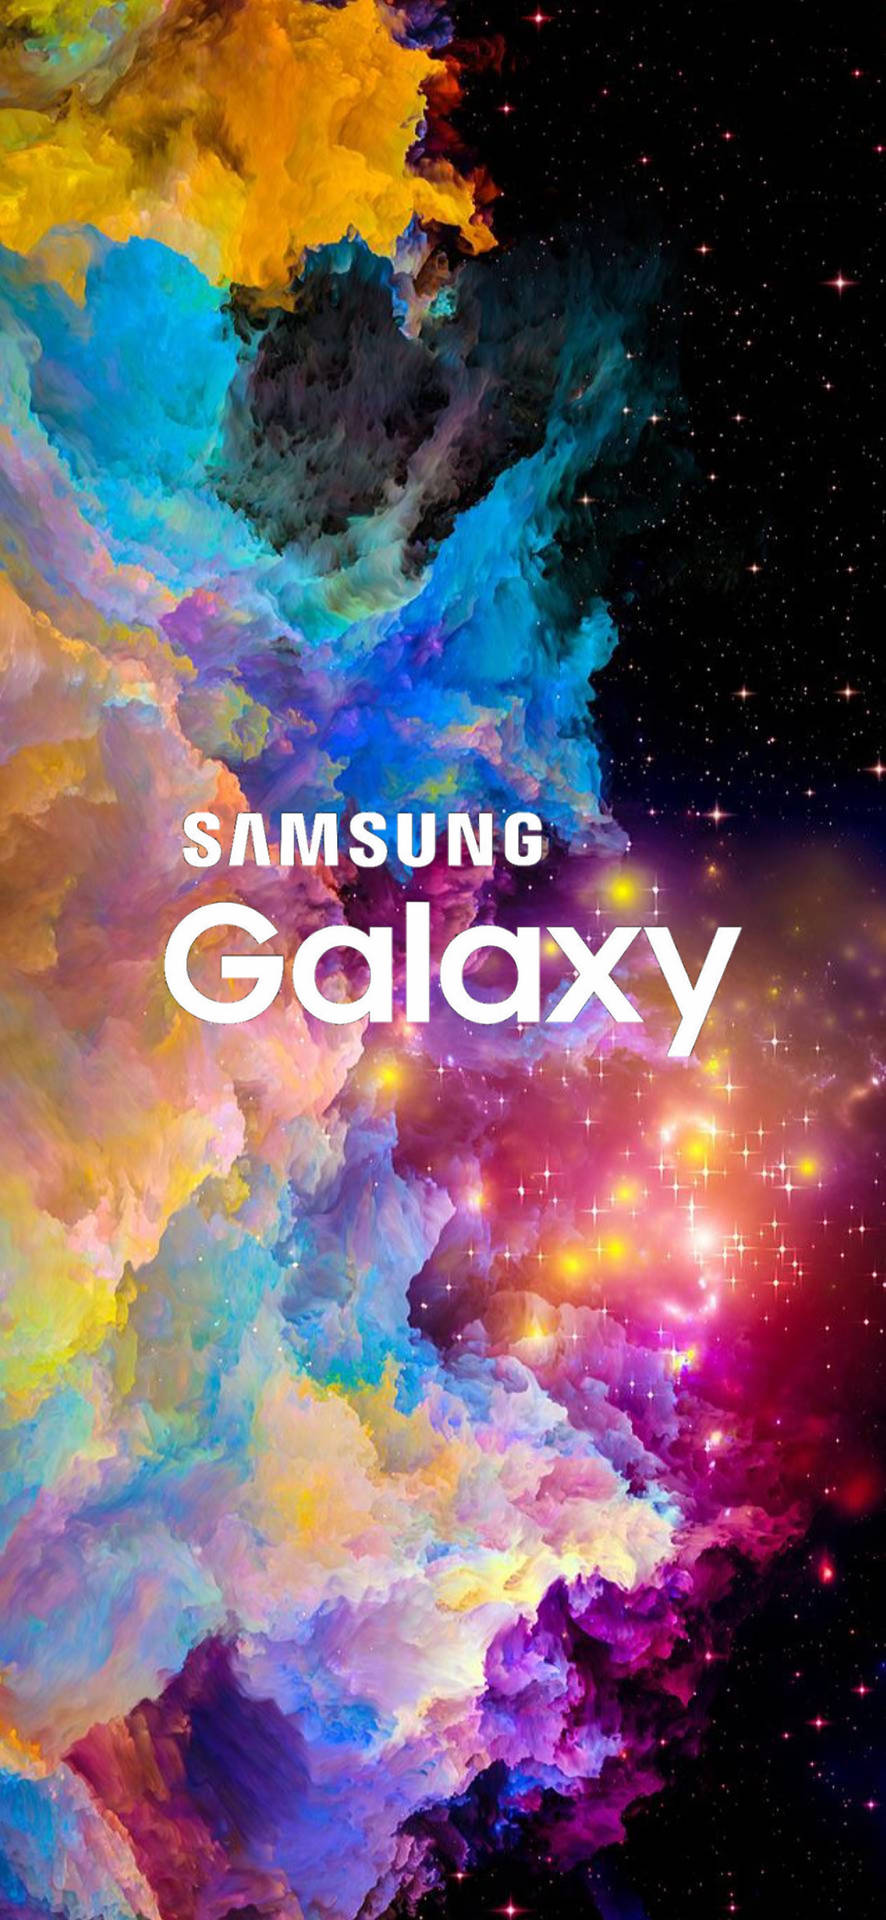 Samsung Galaxy Colorful Nebula